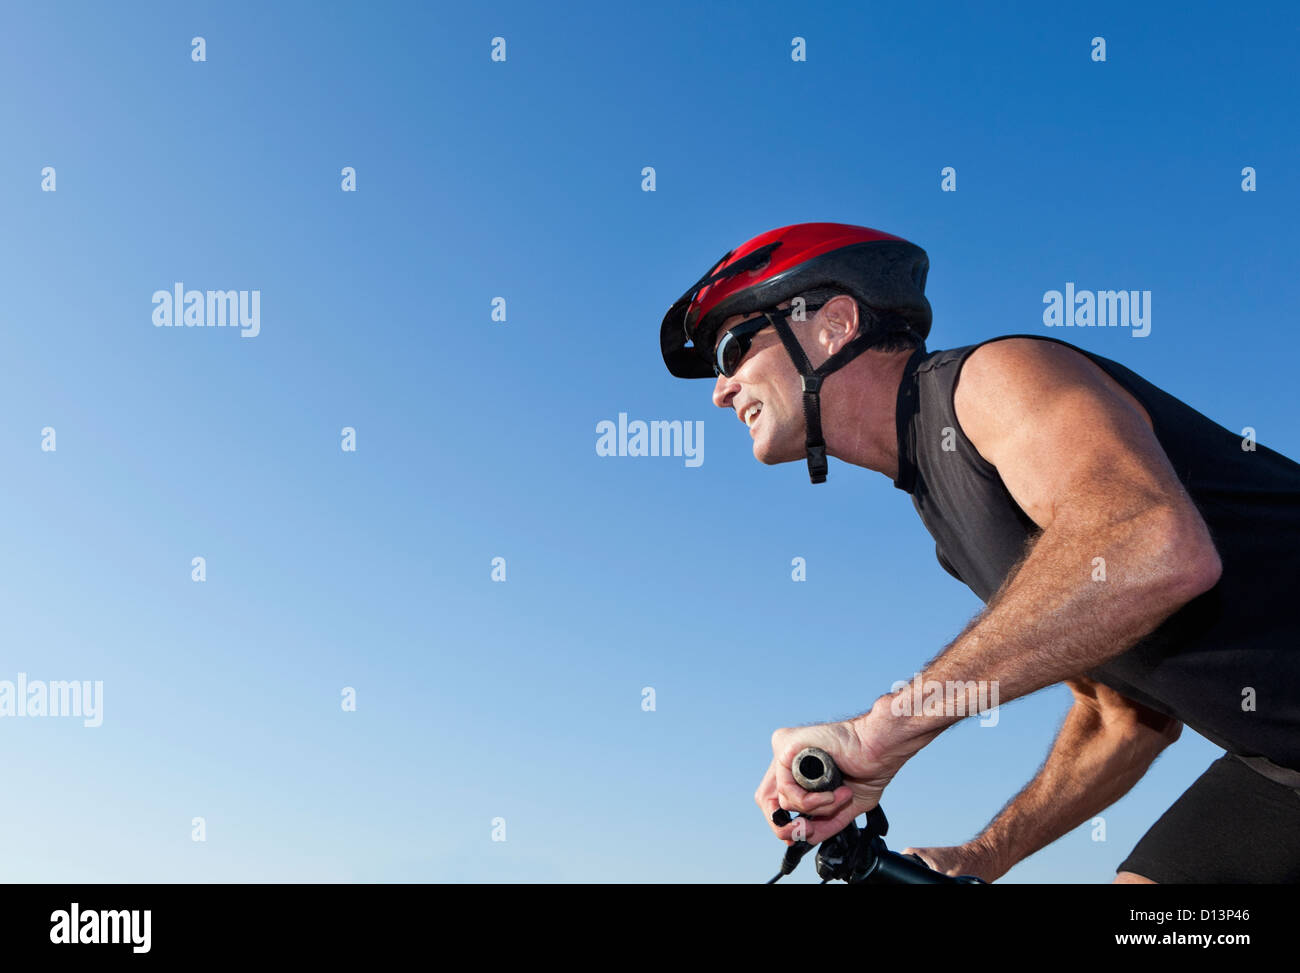 Stati Uniti, California, San Francisco, ritratto del ciclista in casco contro il cielo blu Foto Stock